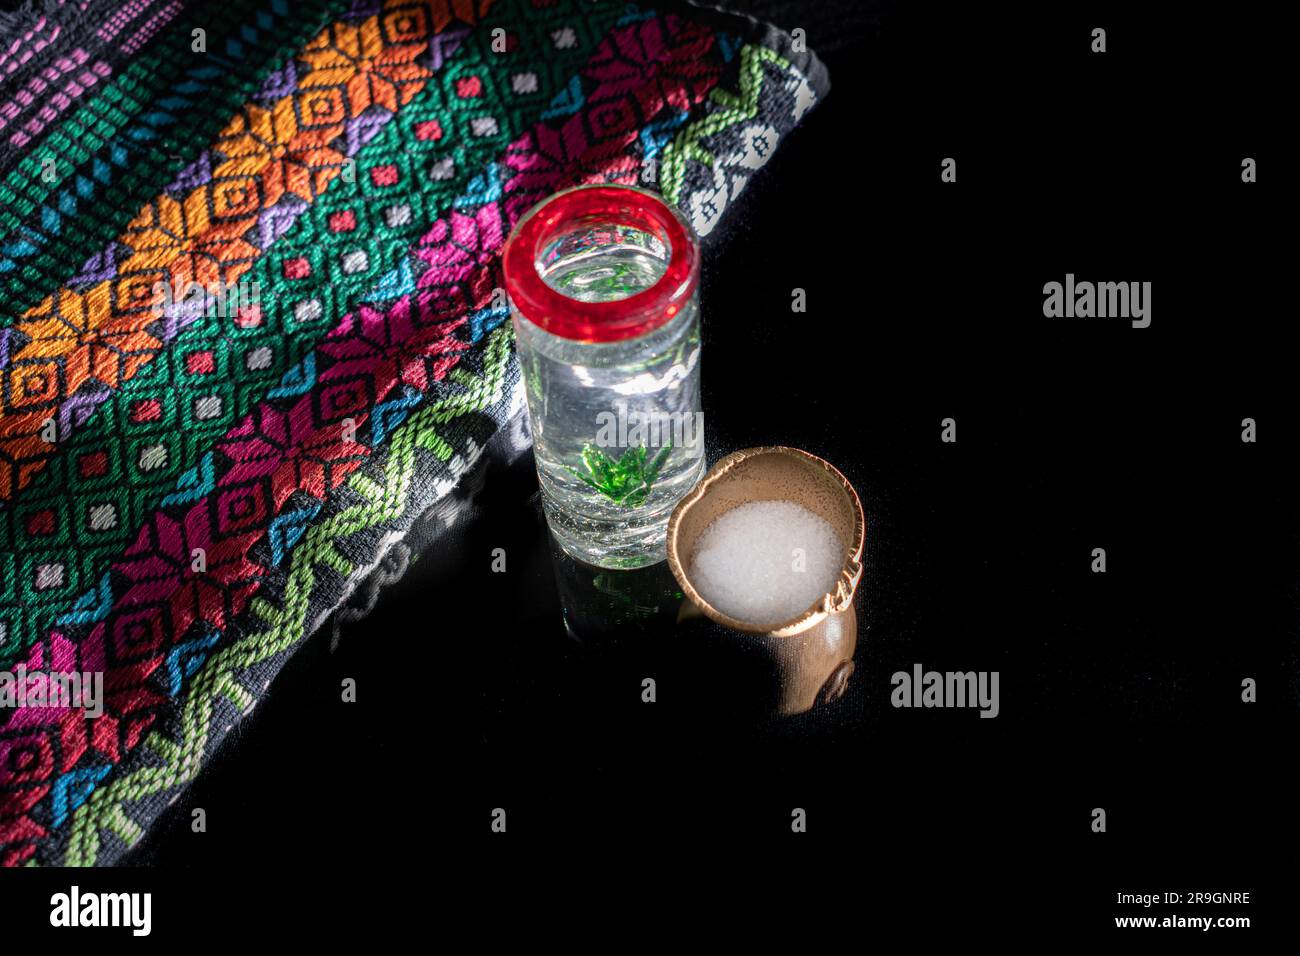 Fotografía de estudio de un tiro de tequila adornado con un maguey en el interior y el borde rojo, junto a un tazón con sal y una tela mexicana bordada a mano. bac negro Foto de stock